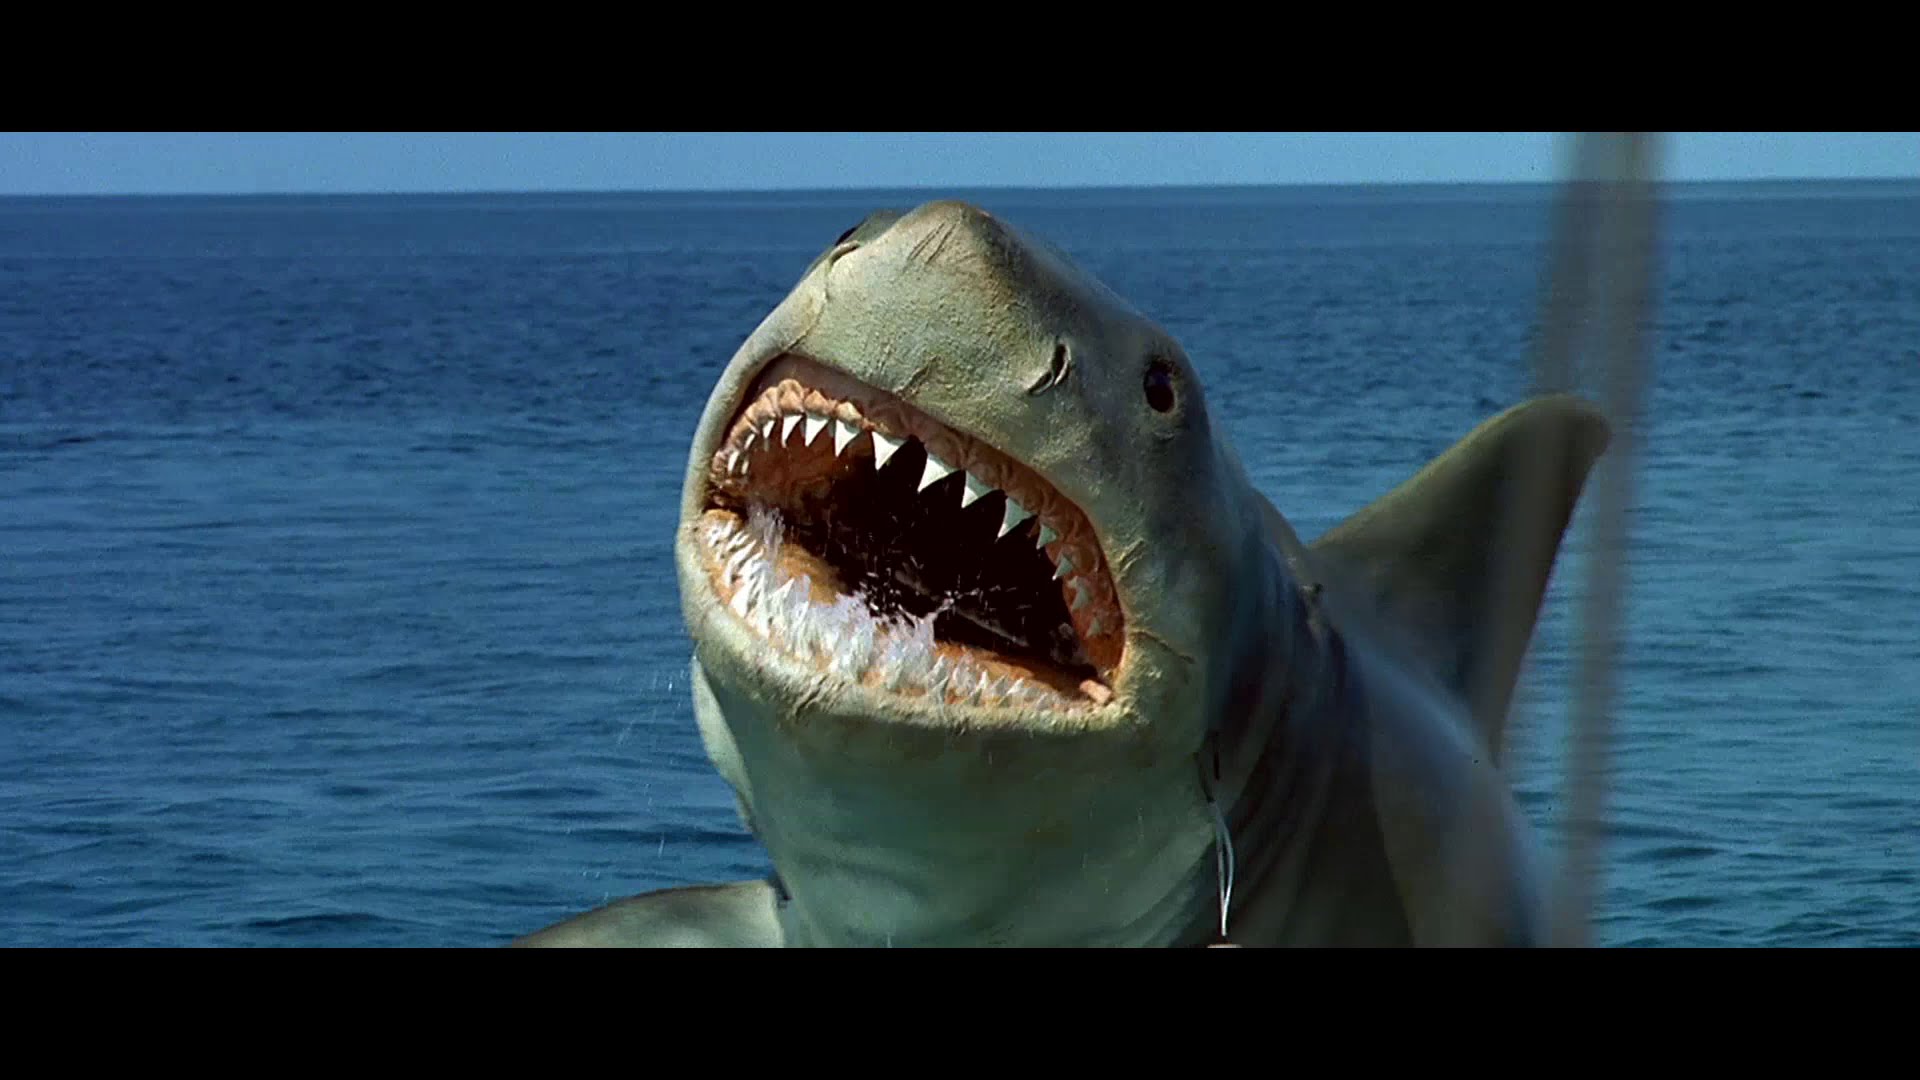 Jaws: The Revenge #4